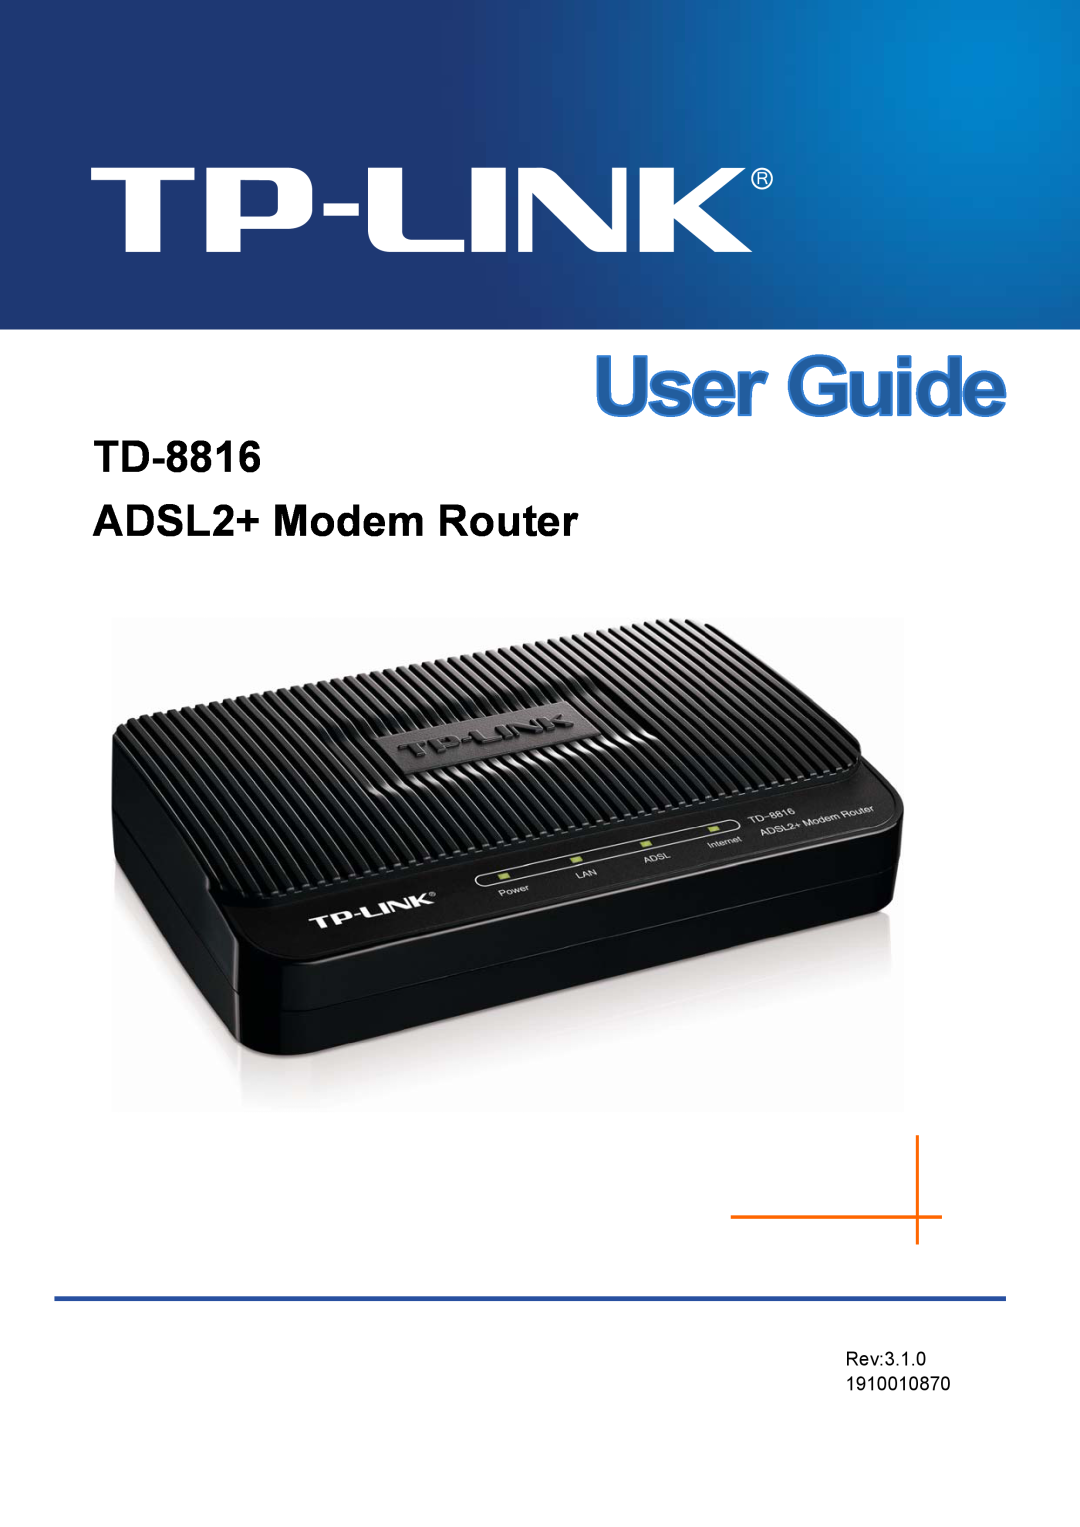 TP-Link manual TD-8816 ADSL2/2+ Ethernet Router, Rev1.0.2 1910010149 